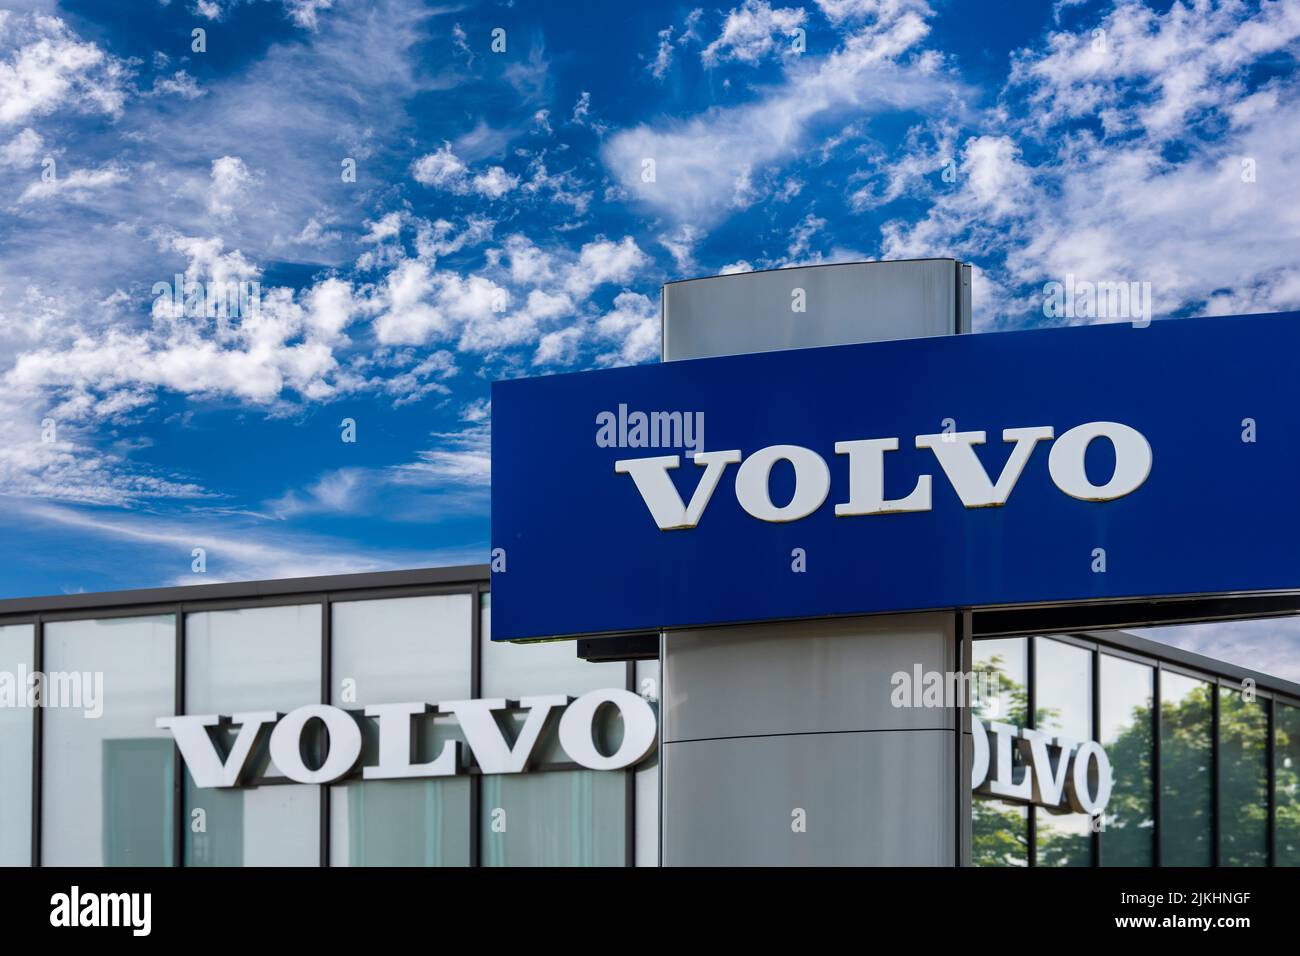 Company sign and logo of car company Volvo Stock Photo